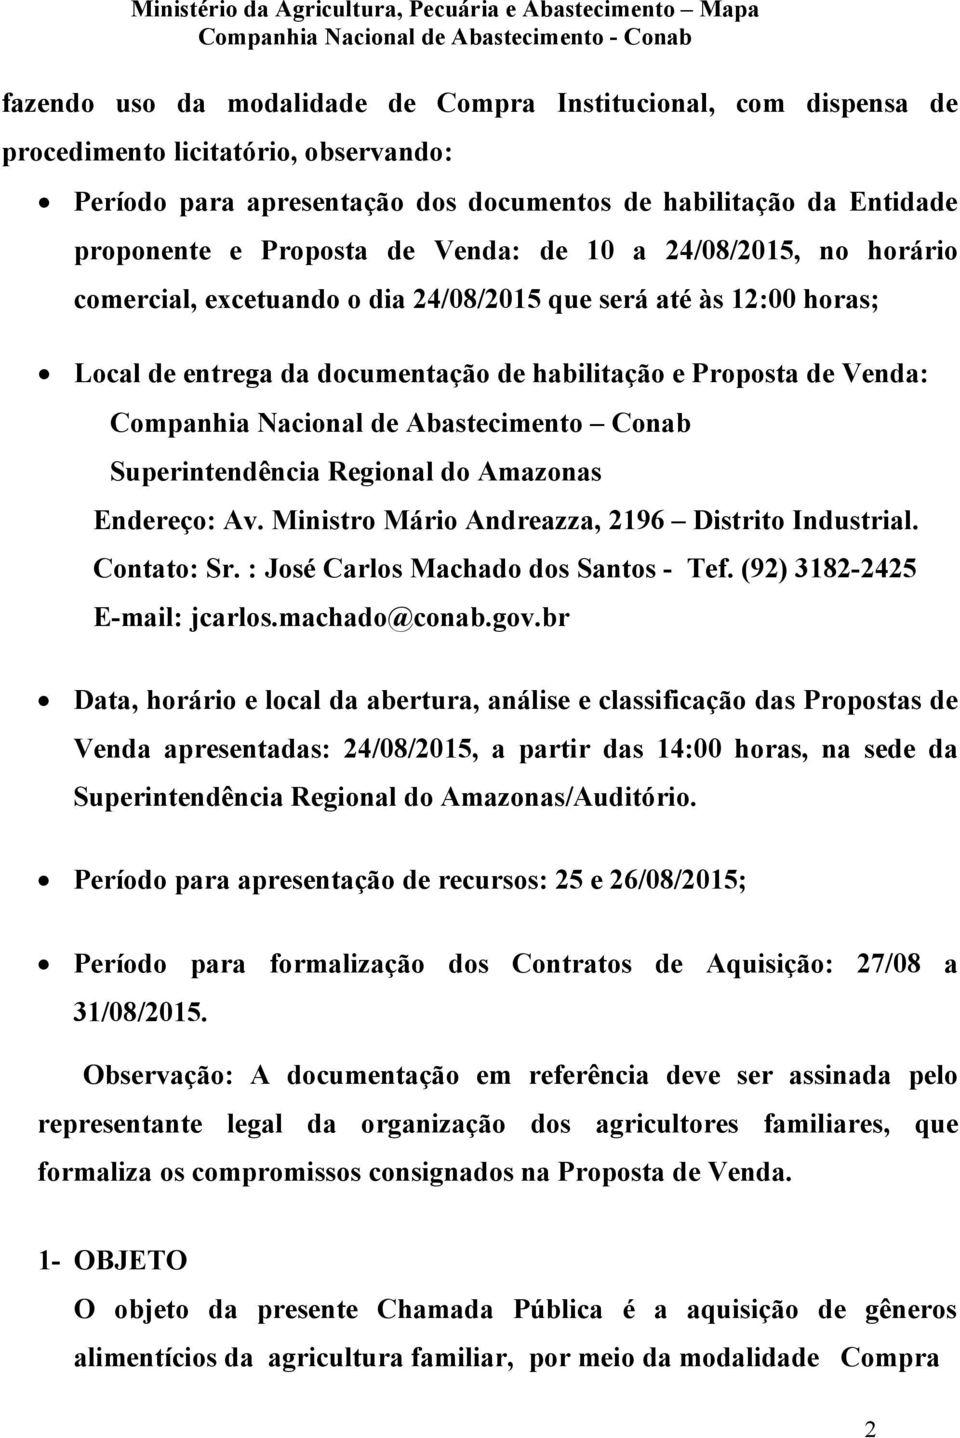 Abastecimento Conab Superintendência Regional do Amazonas Endereço: Av. Ministro Mário Andreazza, 2196 Distrito Industrial. Contato: Sr. : José Carlos Machado dos Santos - Tef.